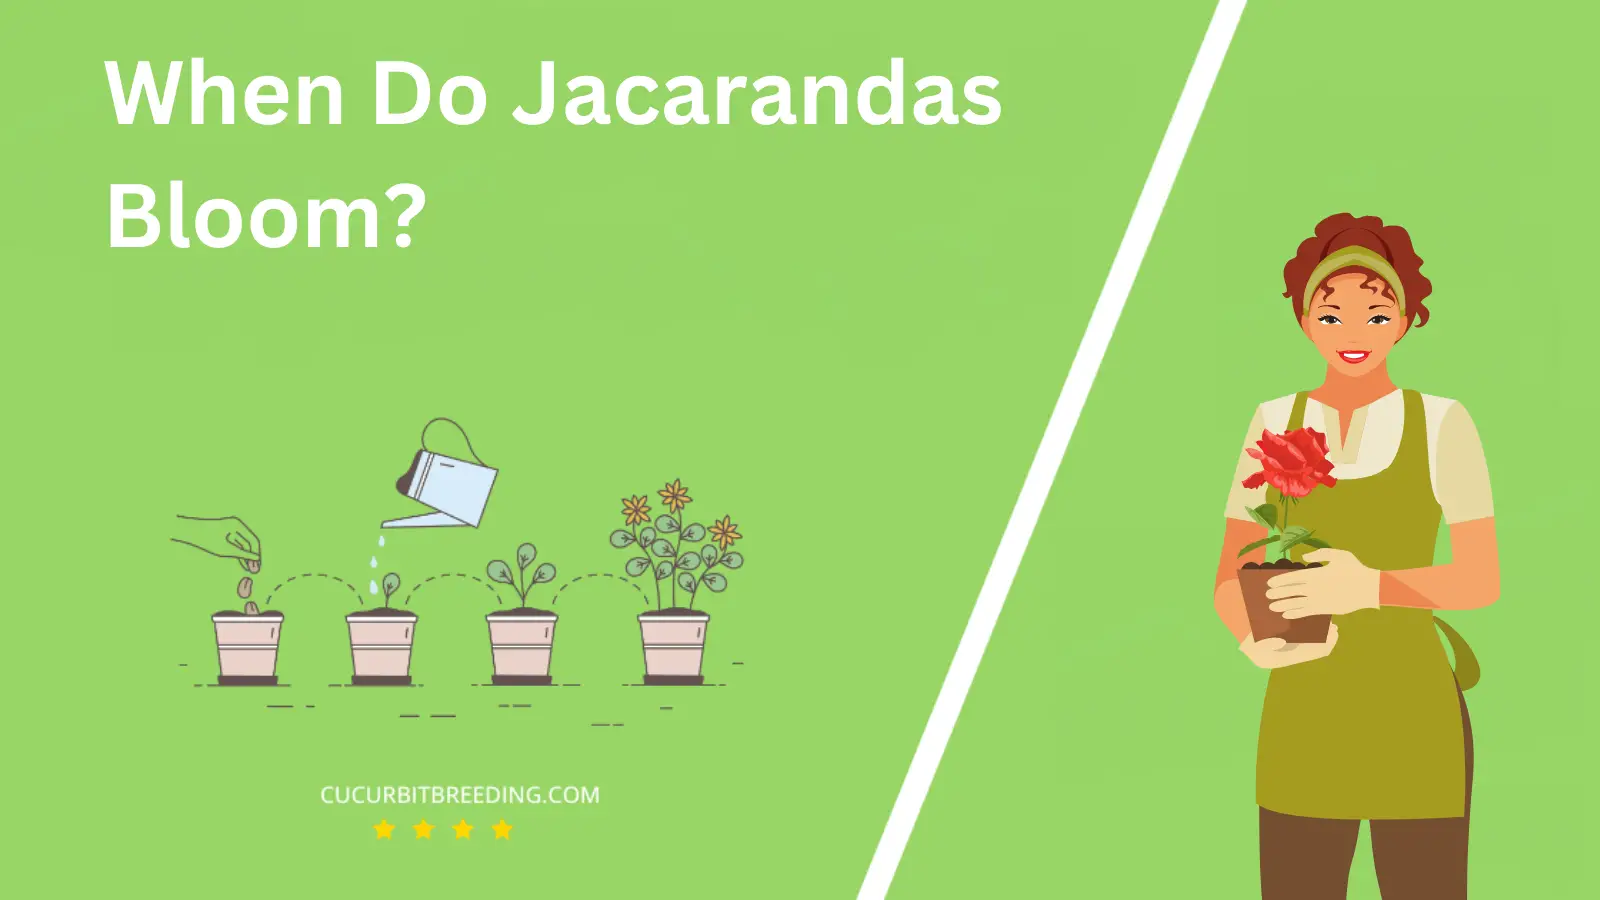 When Do Jacarandas Bloom?